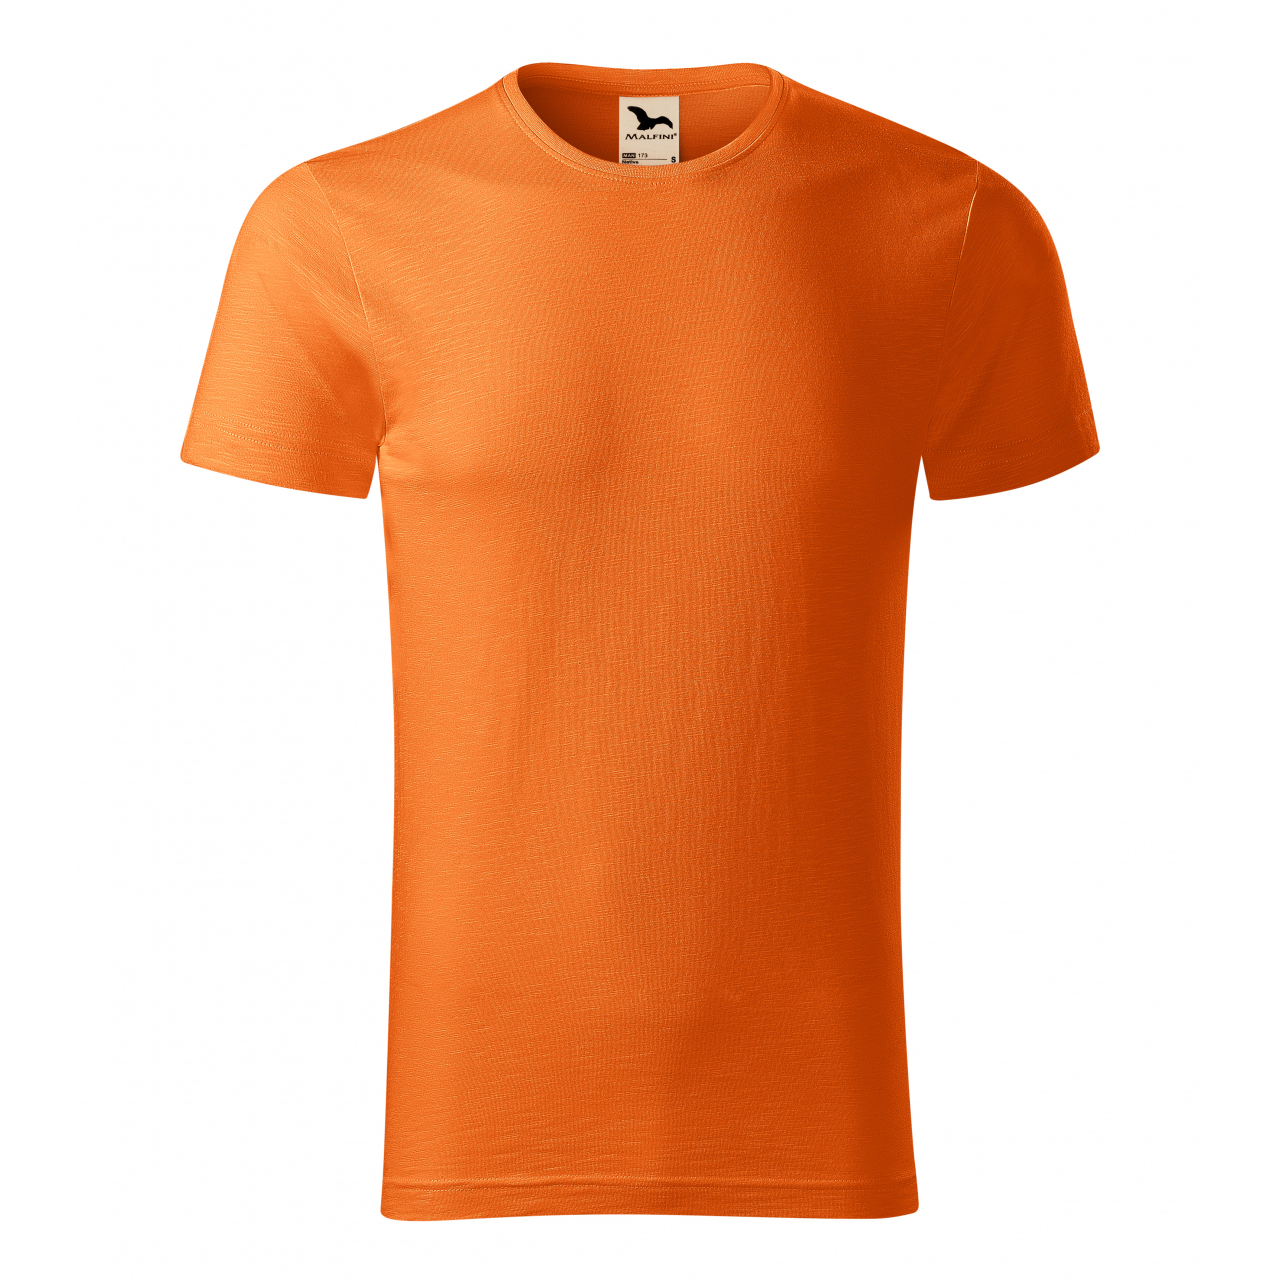 Tričko pánské Malfini Native - oranžové, M